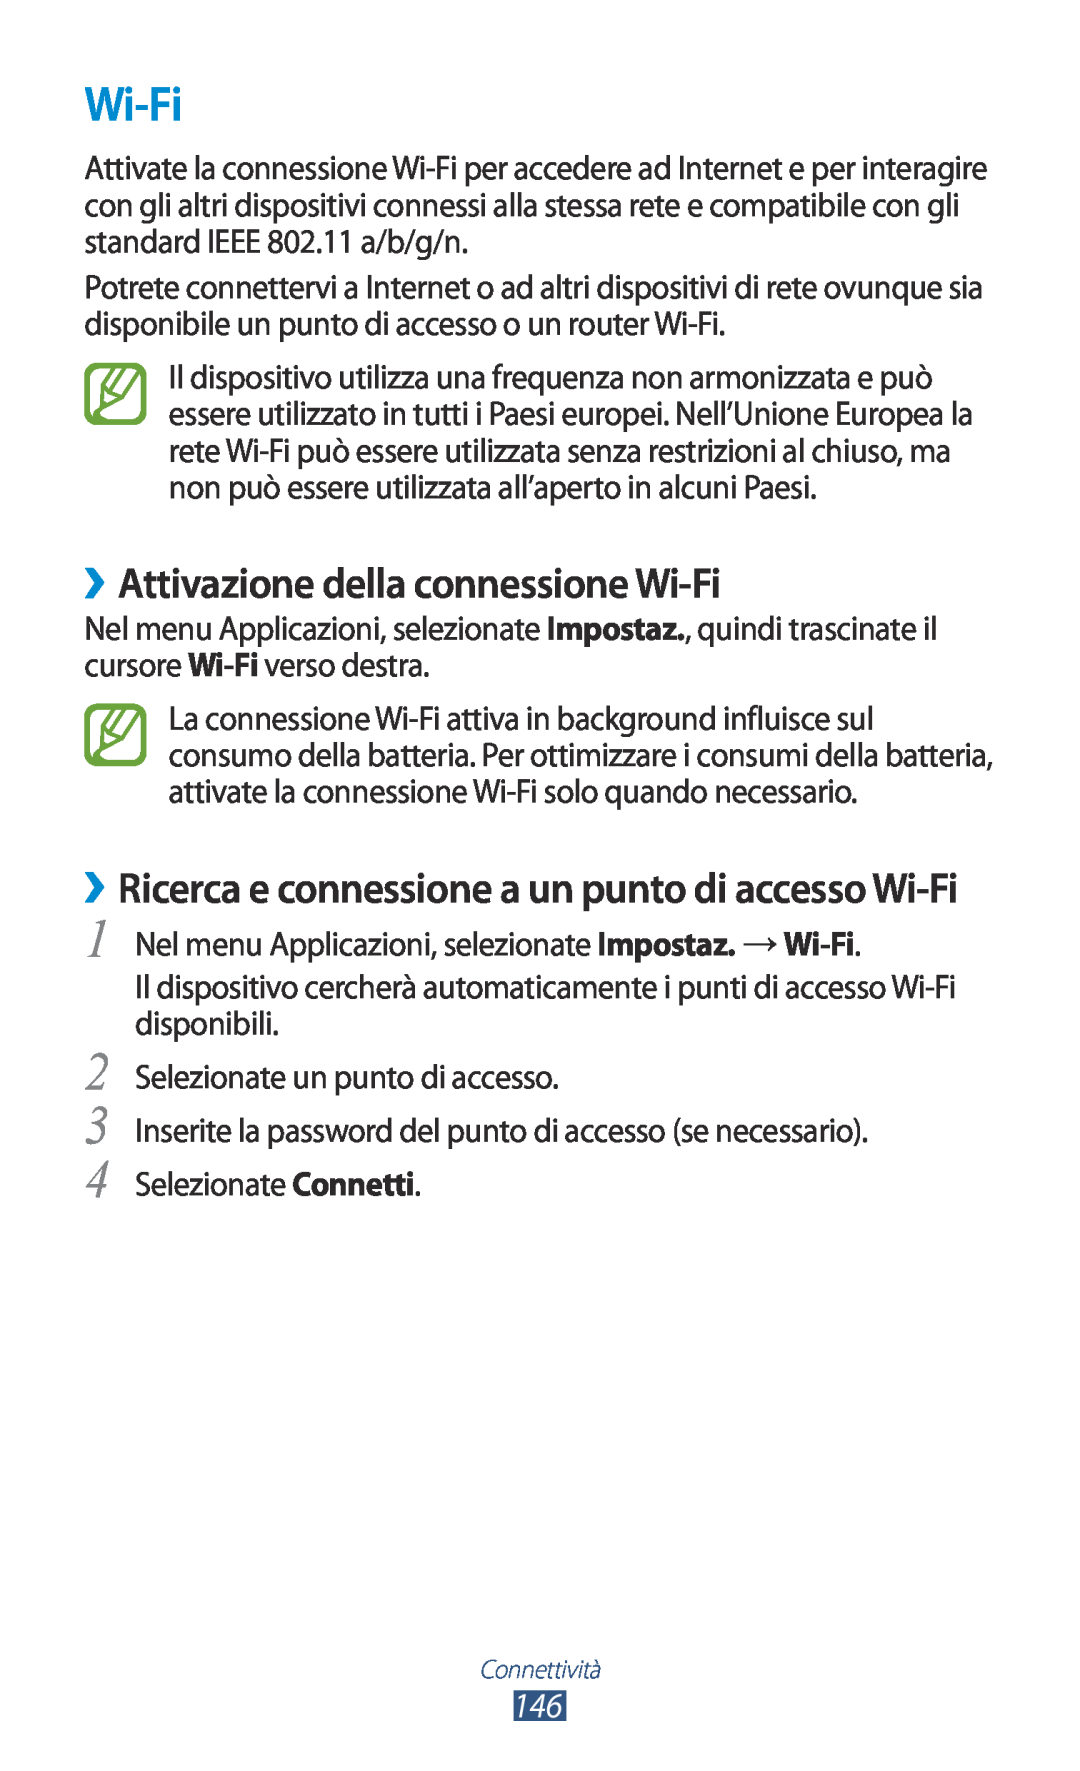 Samsung GT-N7000ZBAFWB ››Attivazione della connessione Wi-Fi, ››Ricerca e connessione a un punto di accesso Wi-Fi 